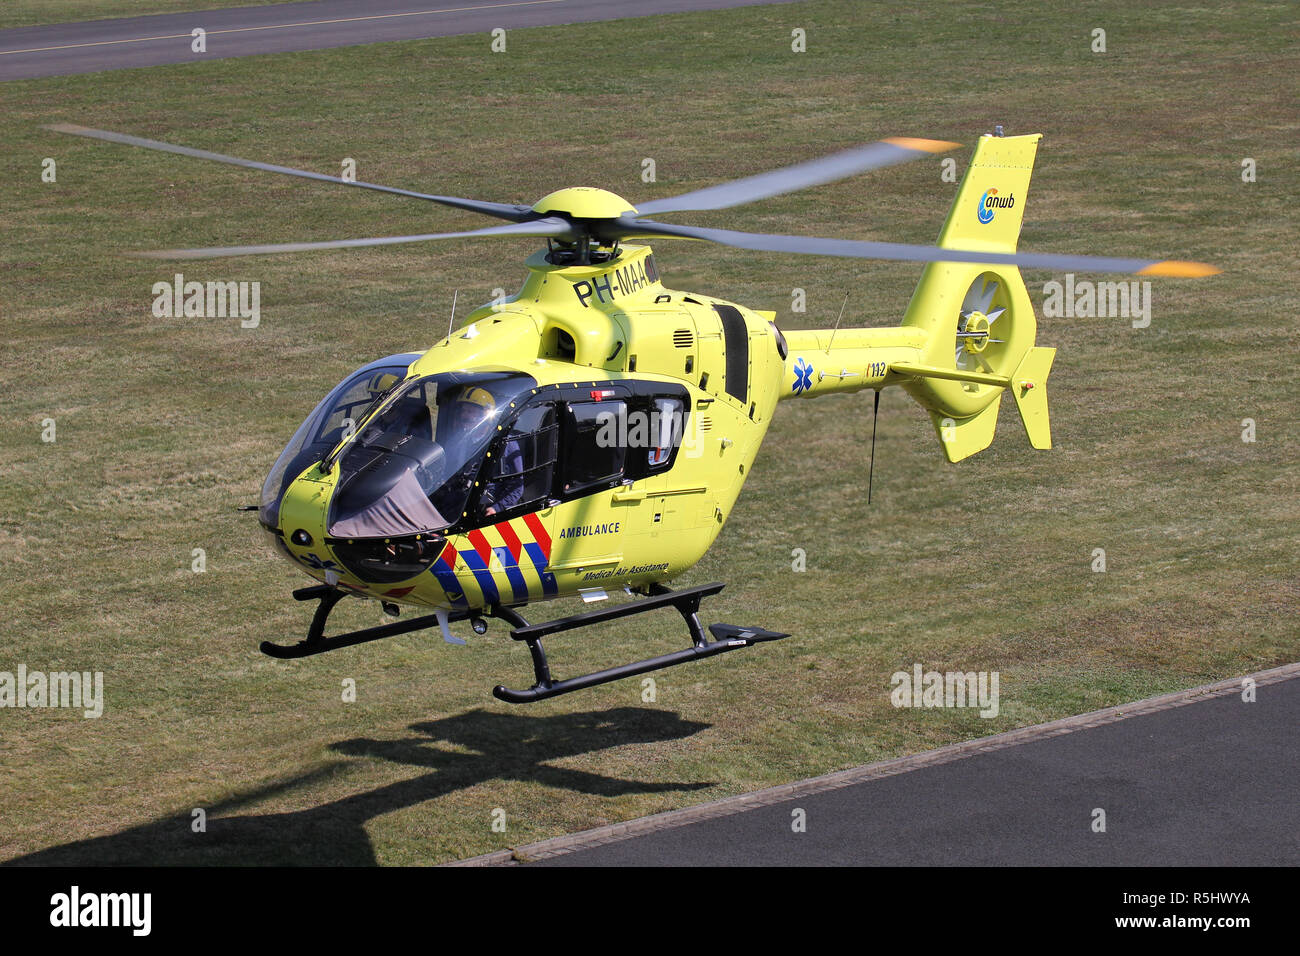 L'ANWB Medical Air Assistance Eurocopter AS-135T2 + avec l'inscription PH-MAA partant après l'entretien à l'aéroport de Bonn Hangelar. Banque D'Images